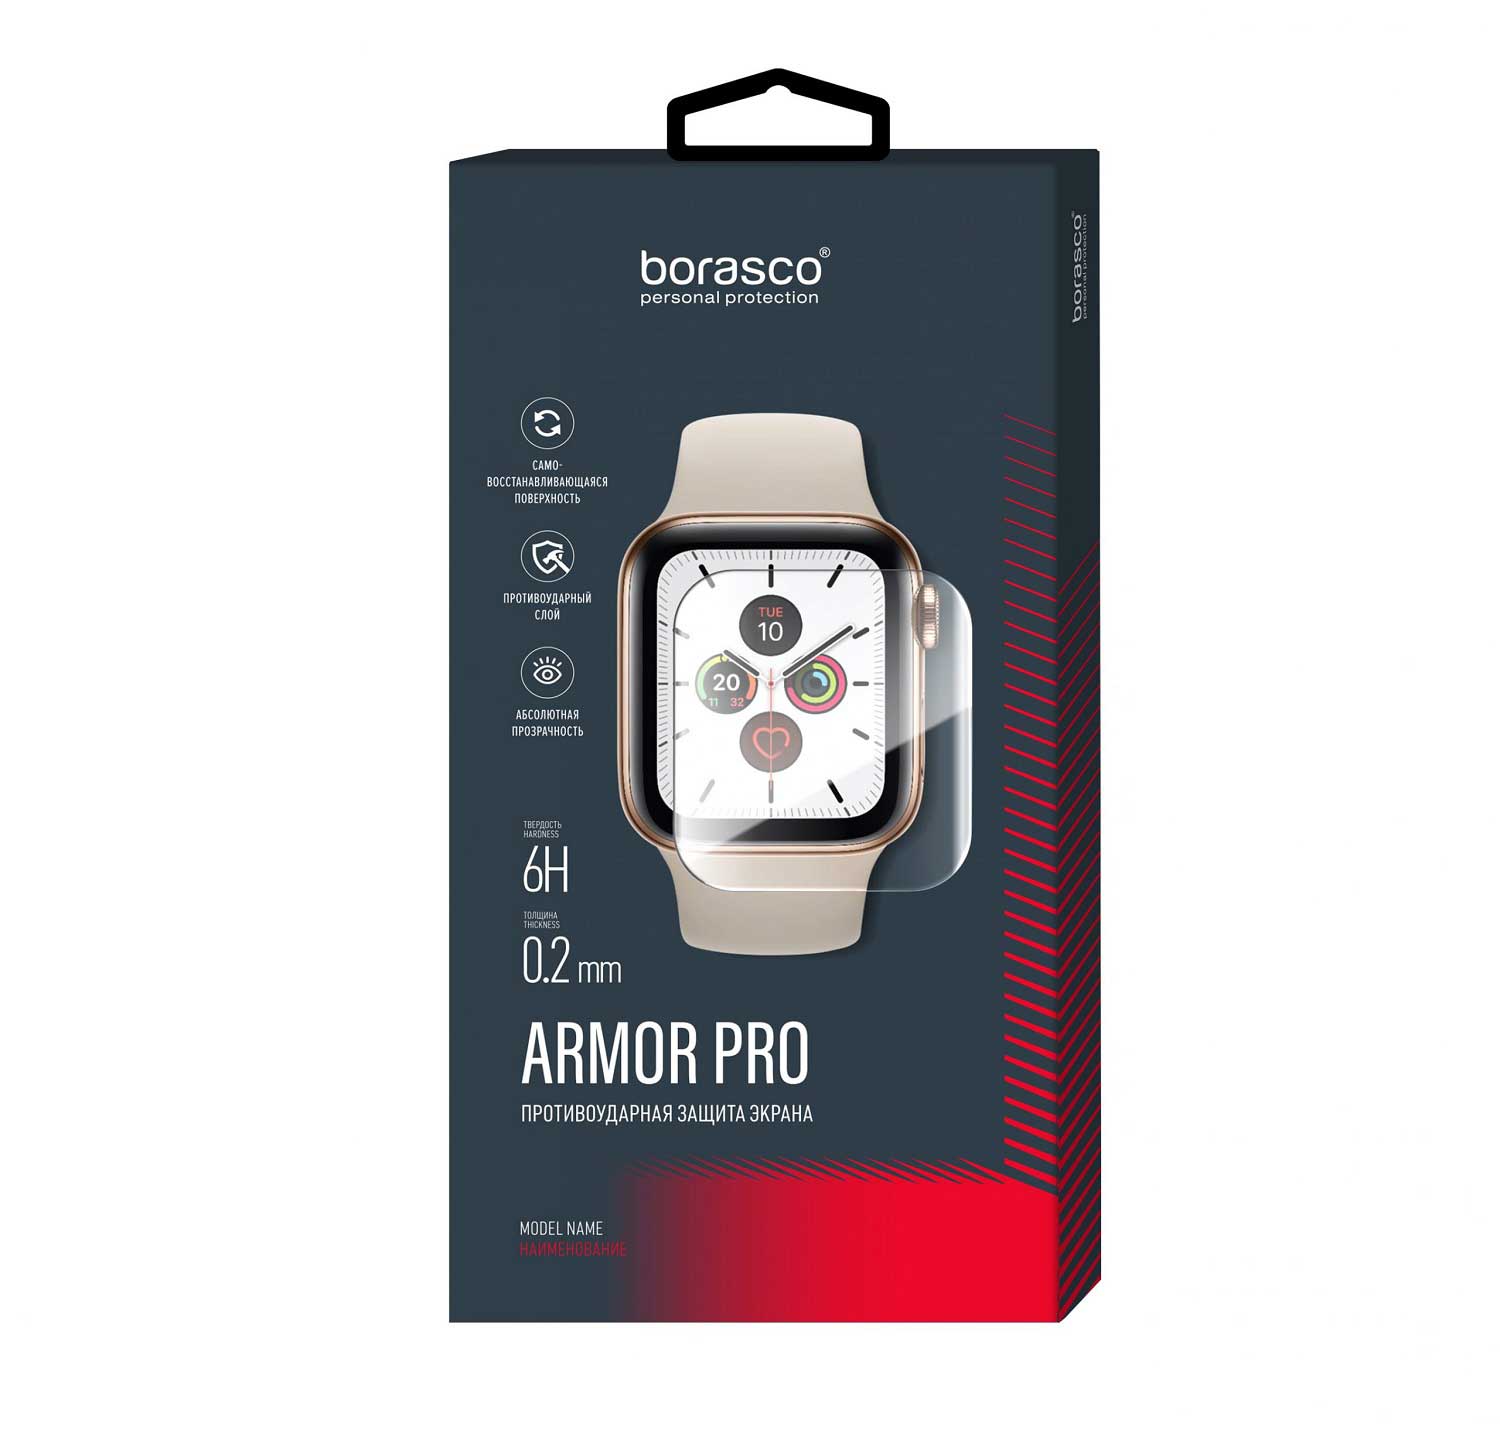 Защита экрана BoraSCO Armor Pro для Xiaomi Mi Band 6 защита экрана borasco armor pro для honor band 2